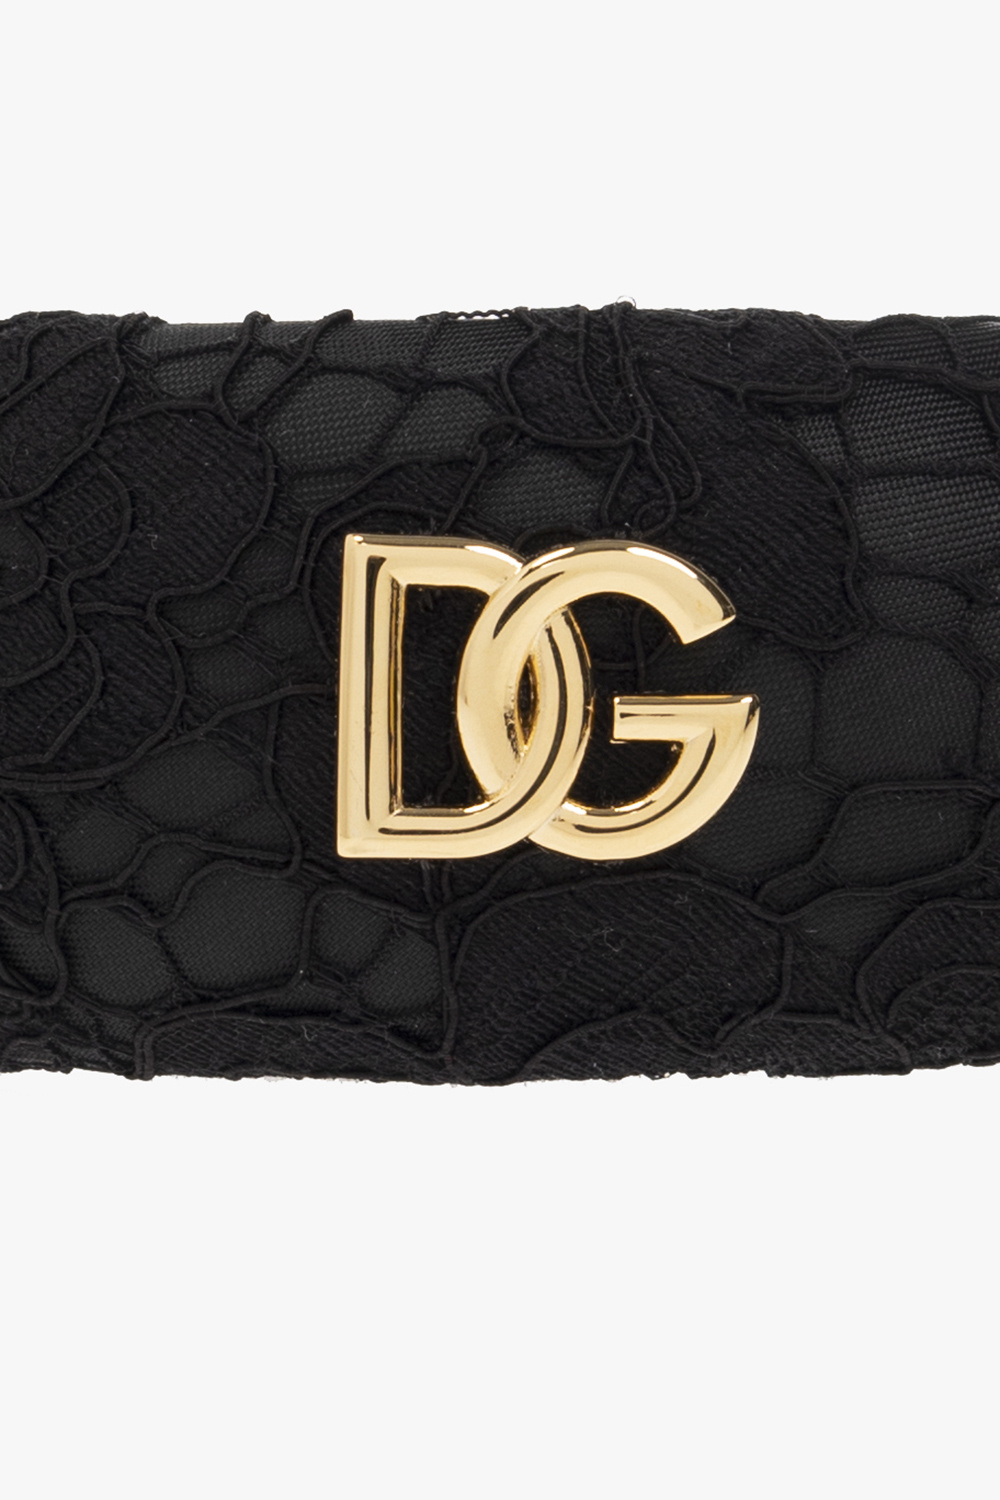 Dolce & Gabbana Kids dolce gabbana dg amore leather shoulder bag